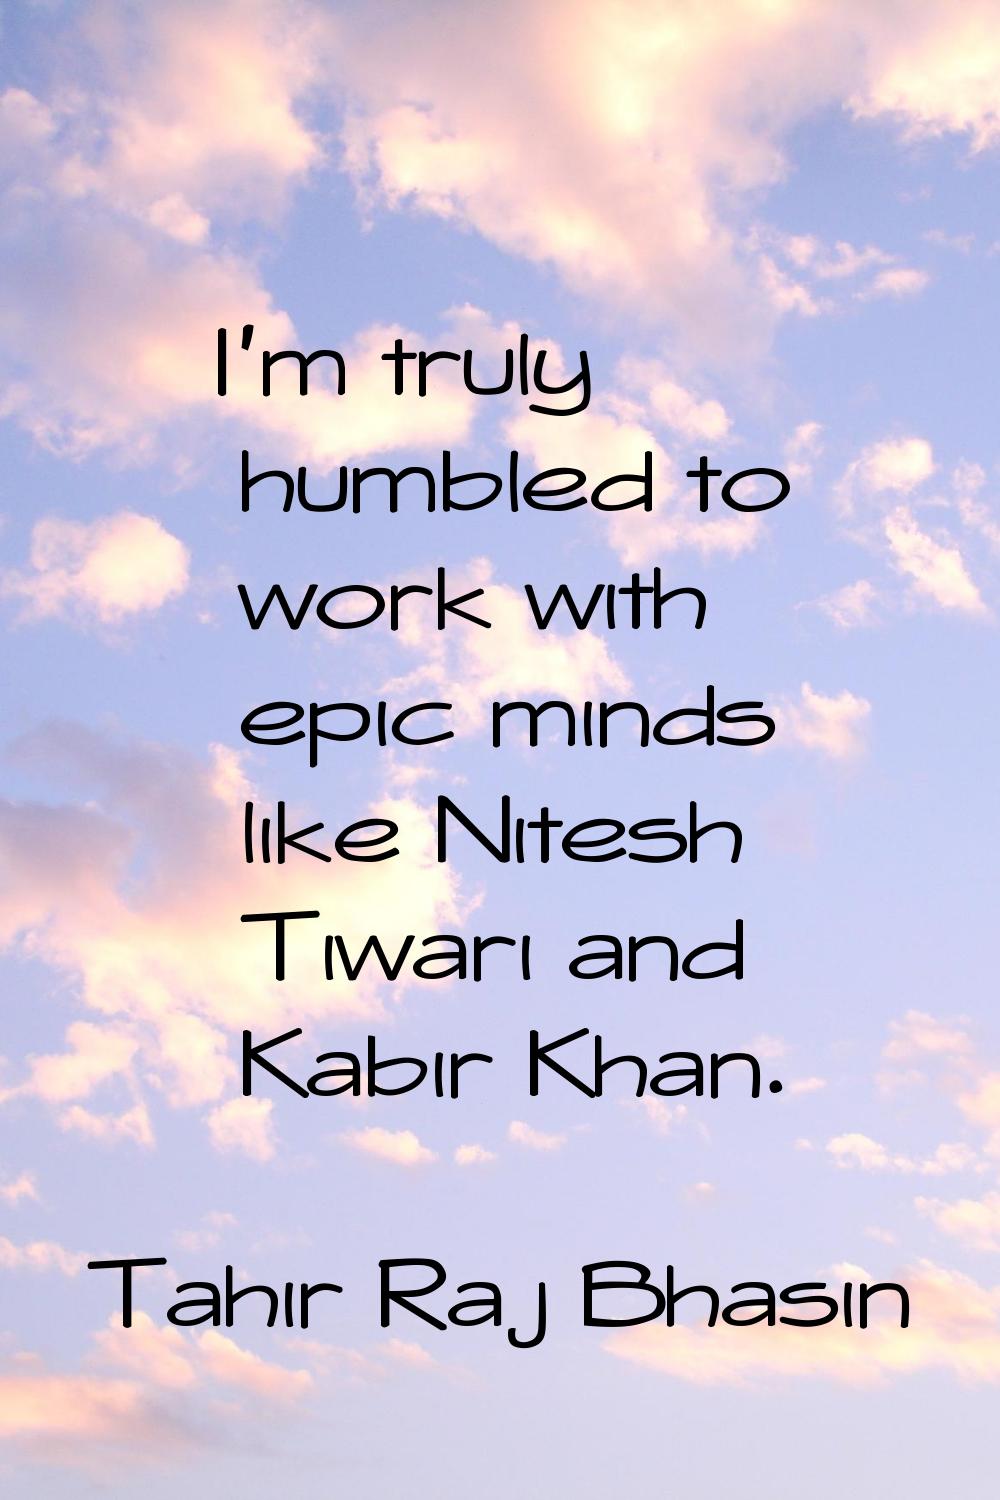 I'm truly humbled to work with epic minds like Nitesh Tiwari and Kabir Khan.